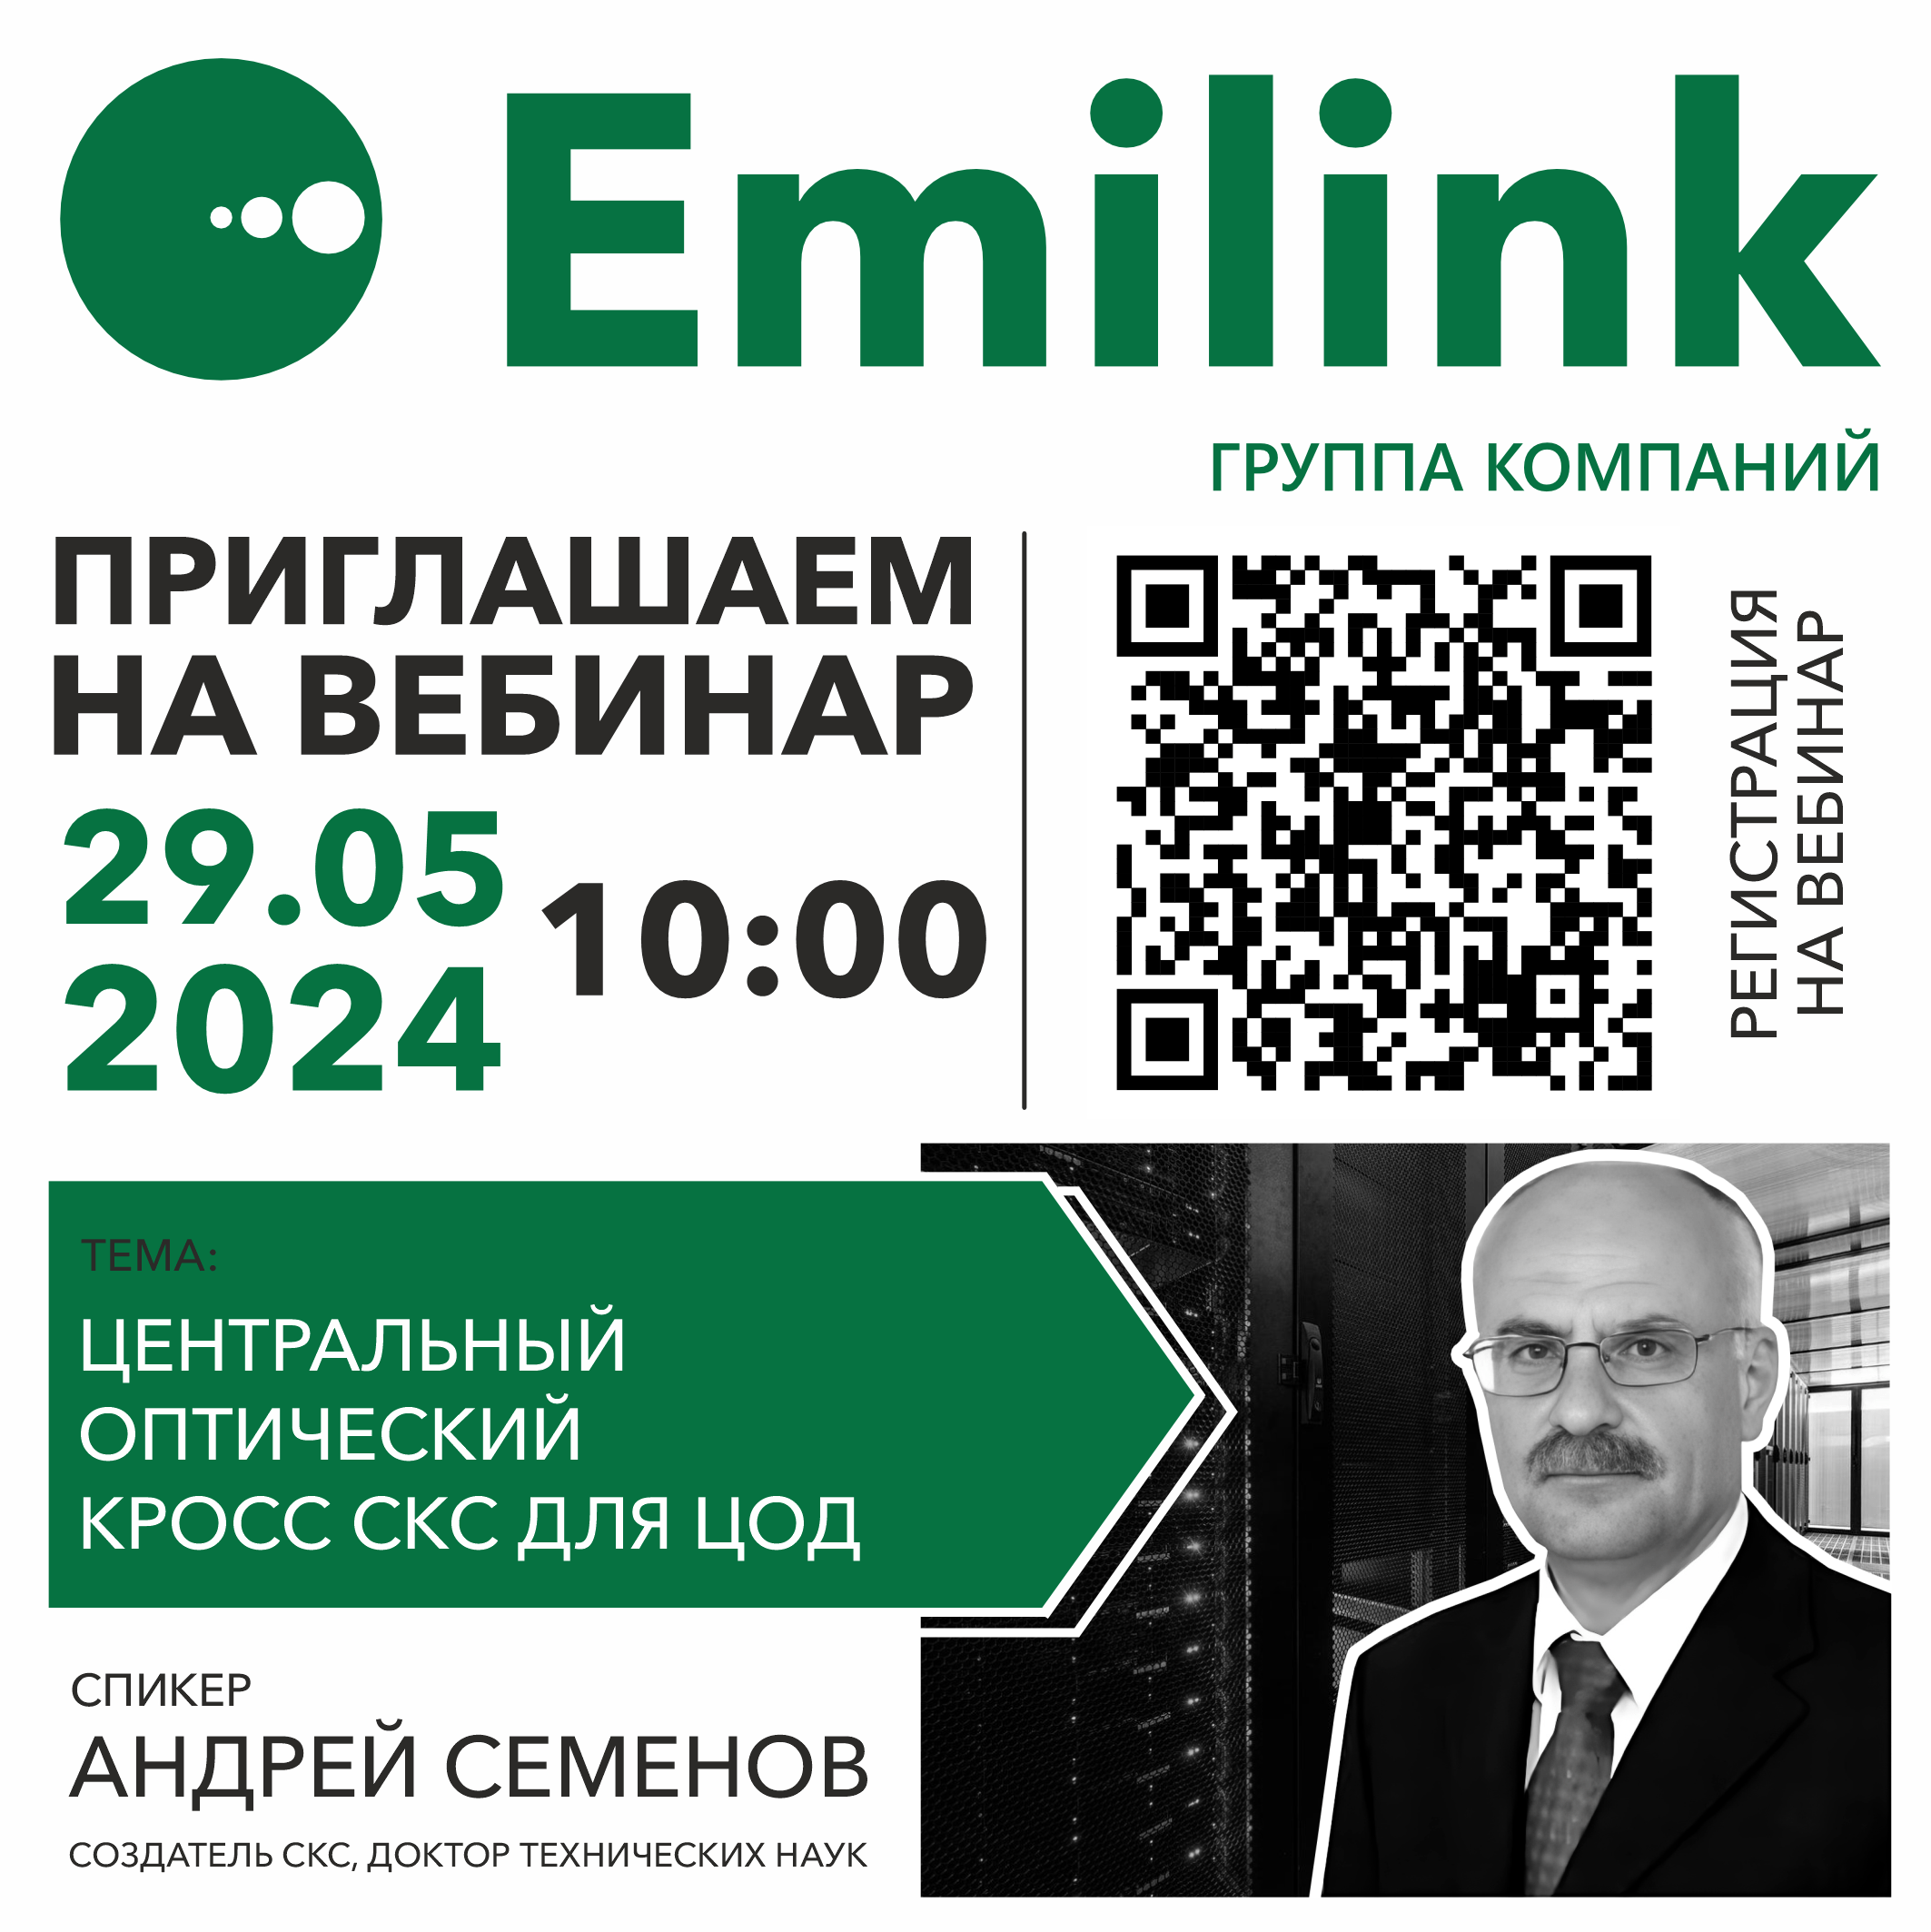 Семёнов Андрей вебинар Emilink май 2024